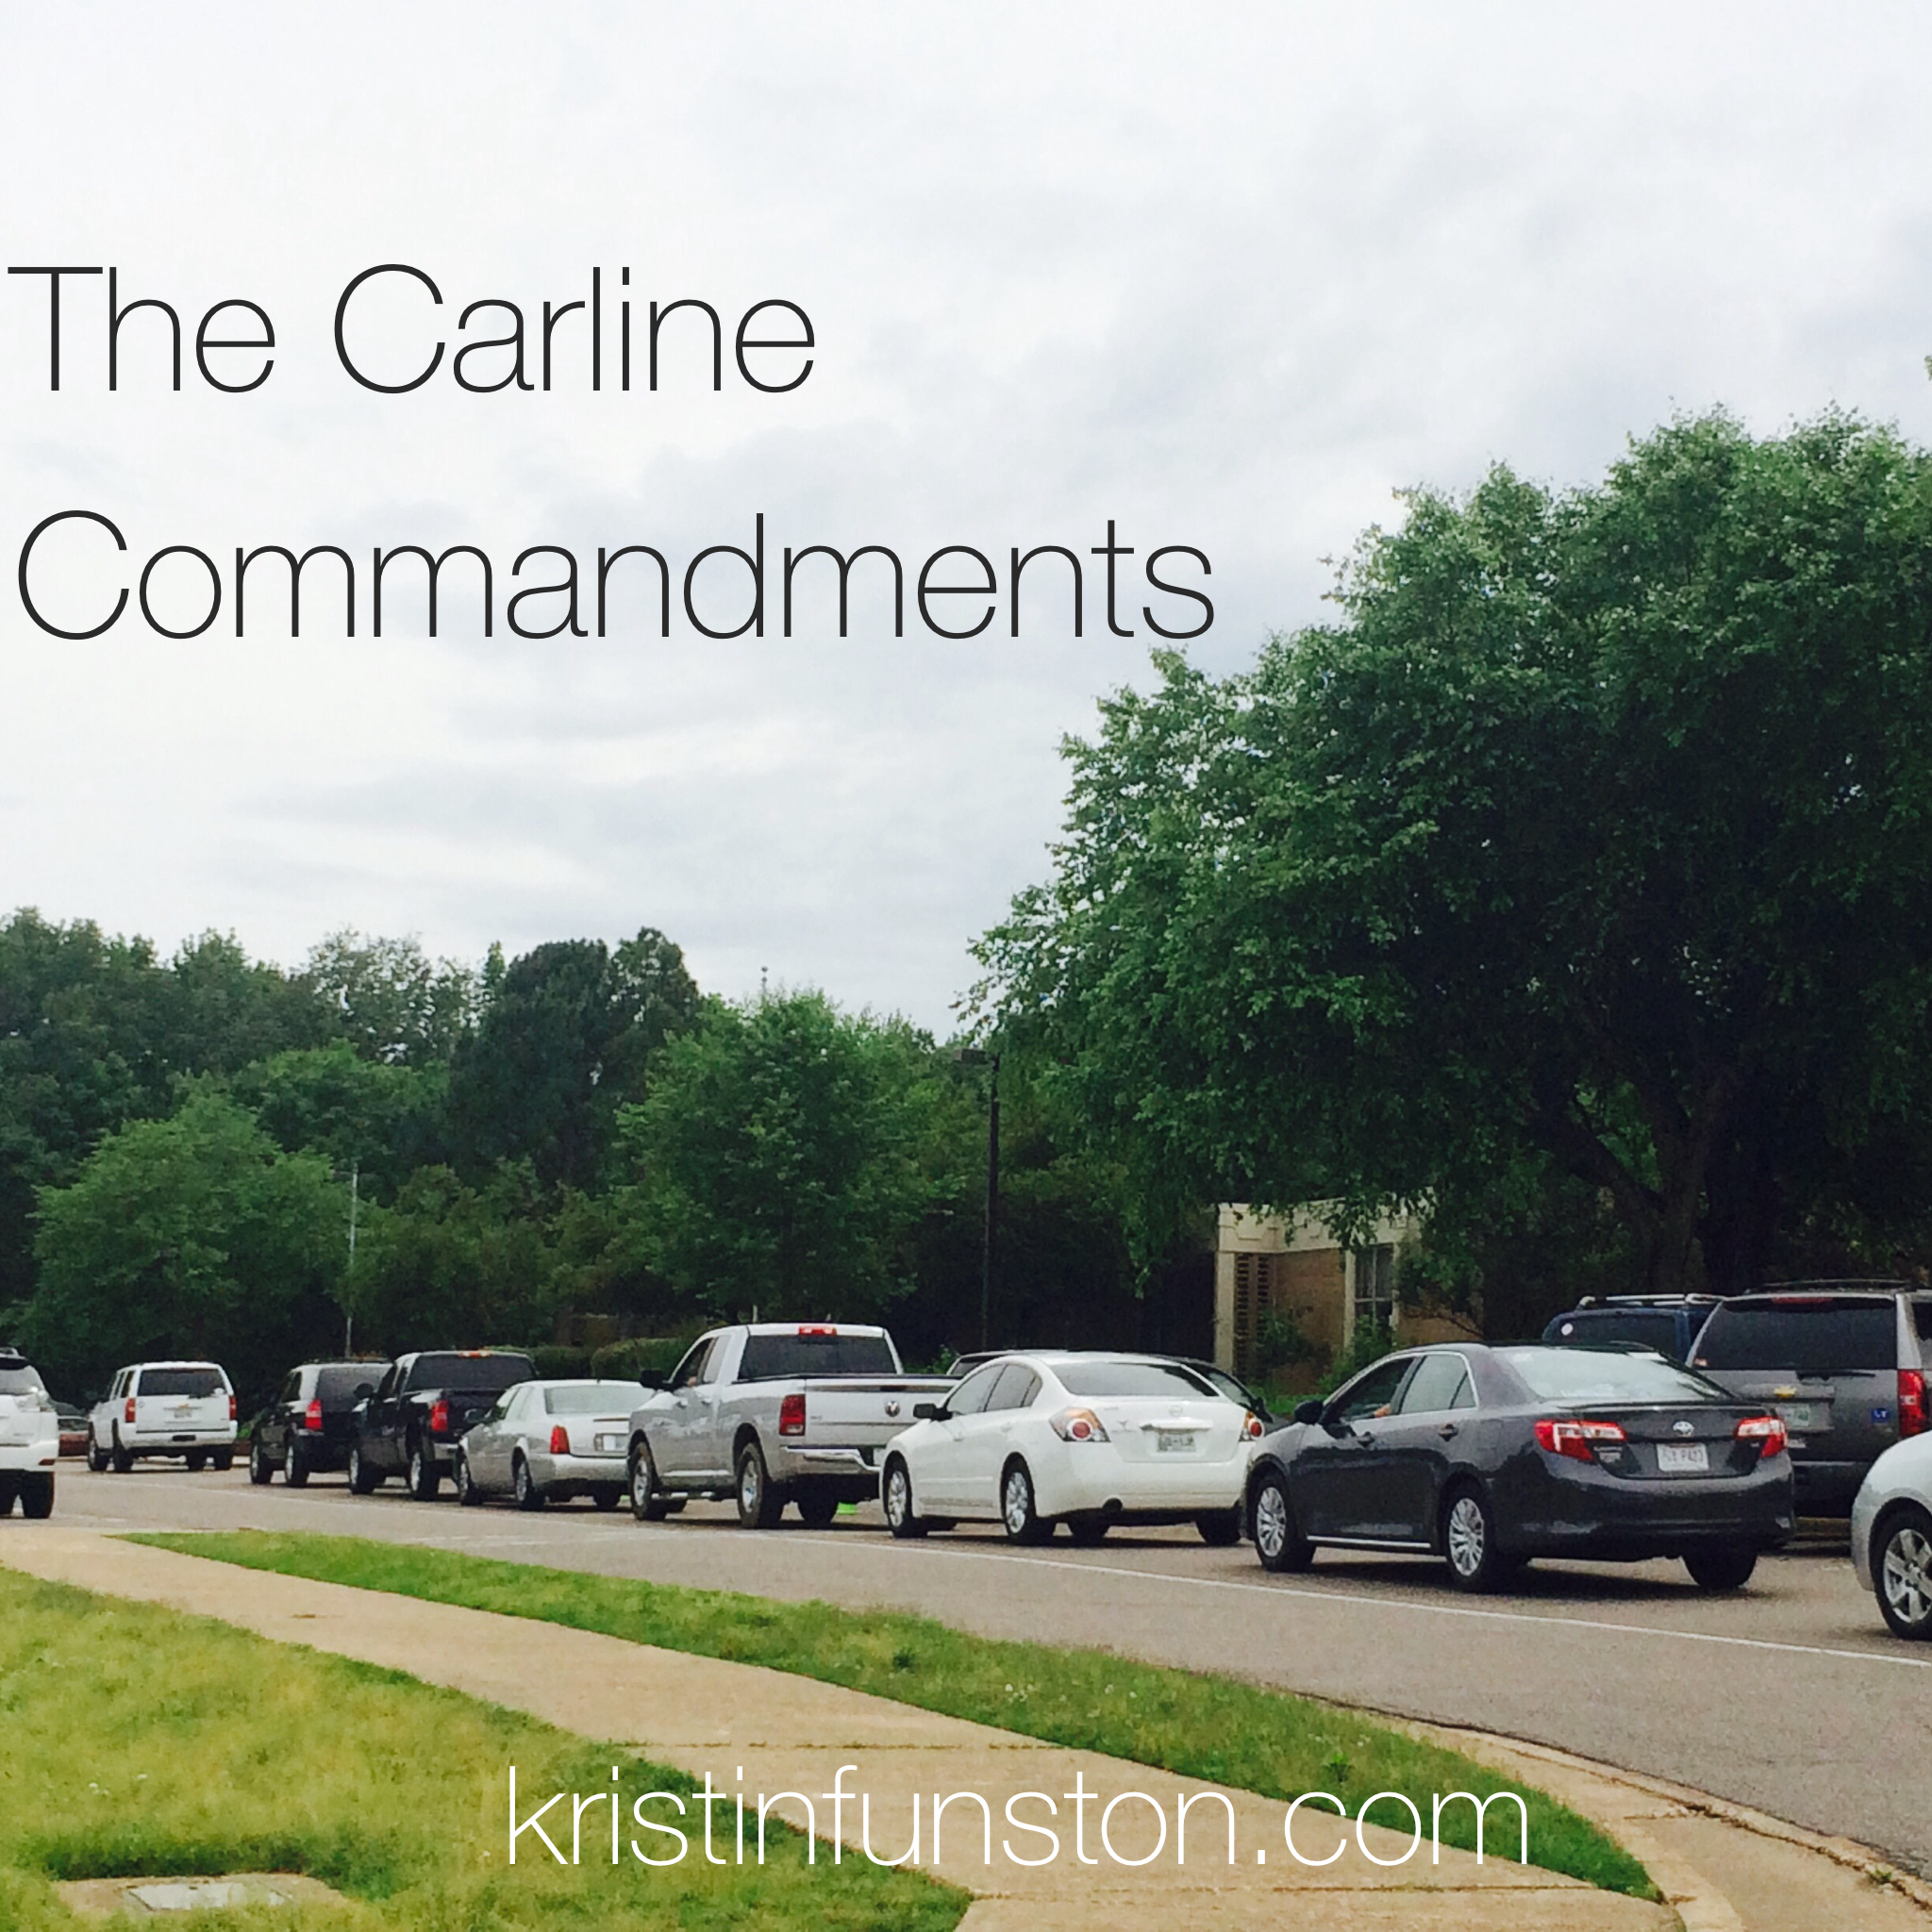 The Car Line Commandments